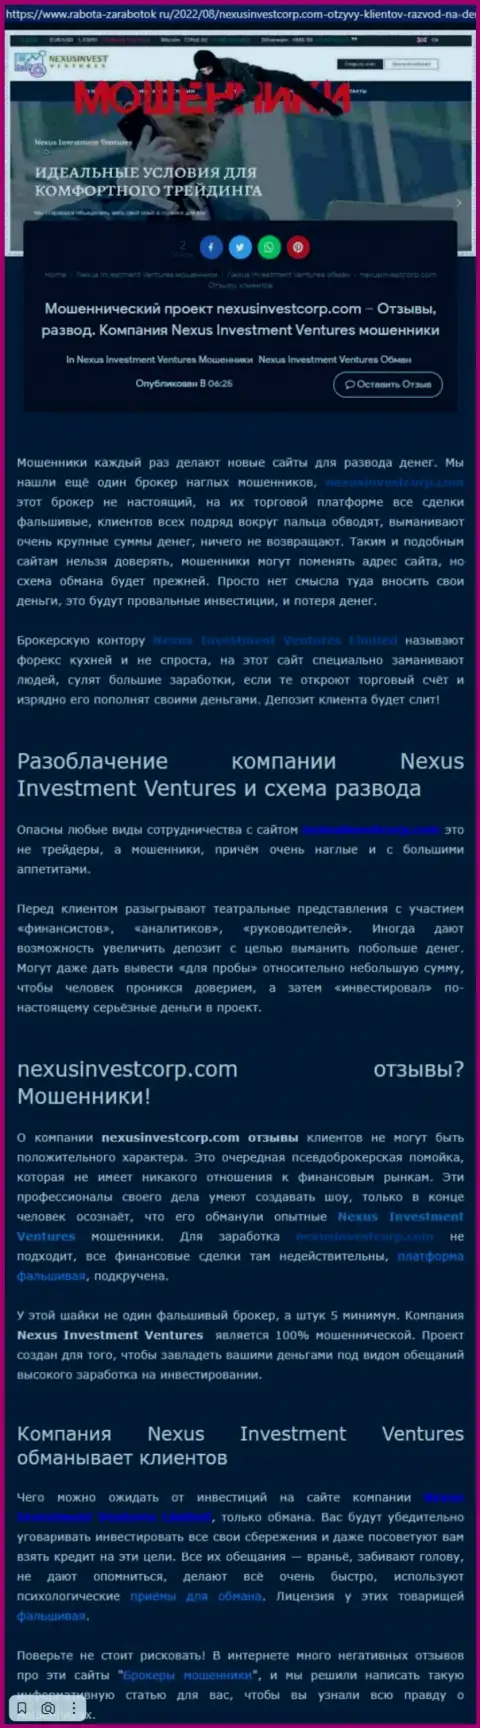 Если не намерены стать еще одной жертвой Nexus Investment Ventures Limited, бегите от них как можно дальше (обзор мошеннических деяний)